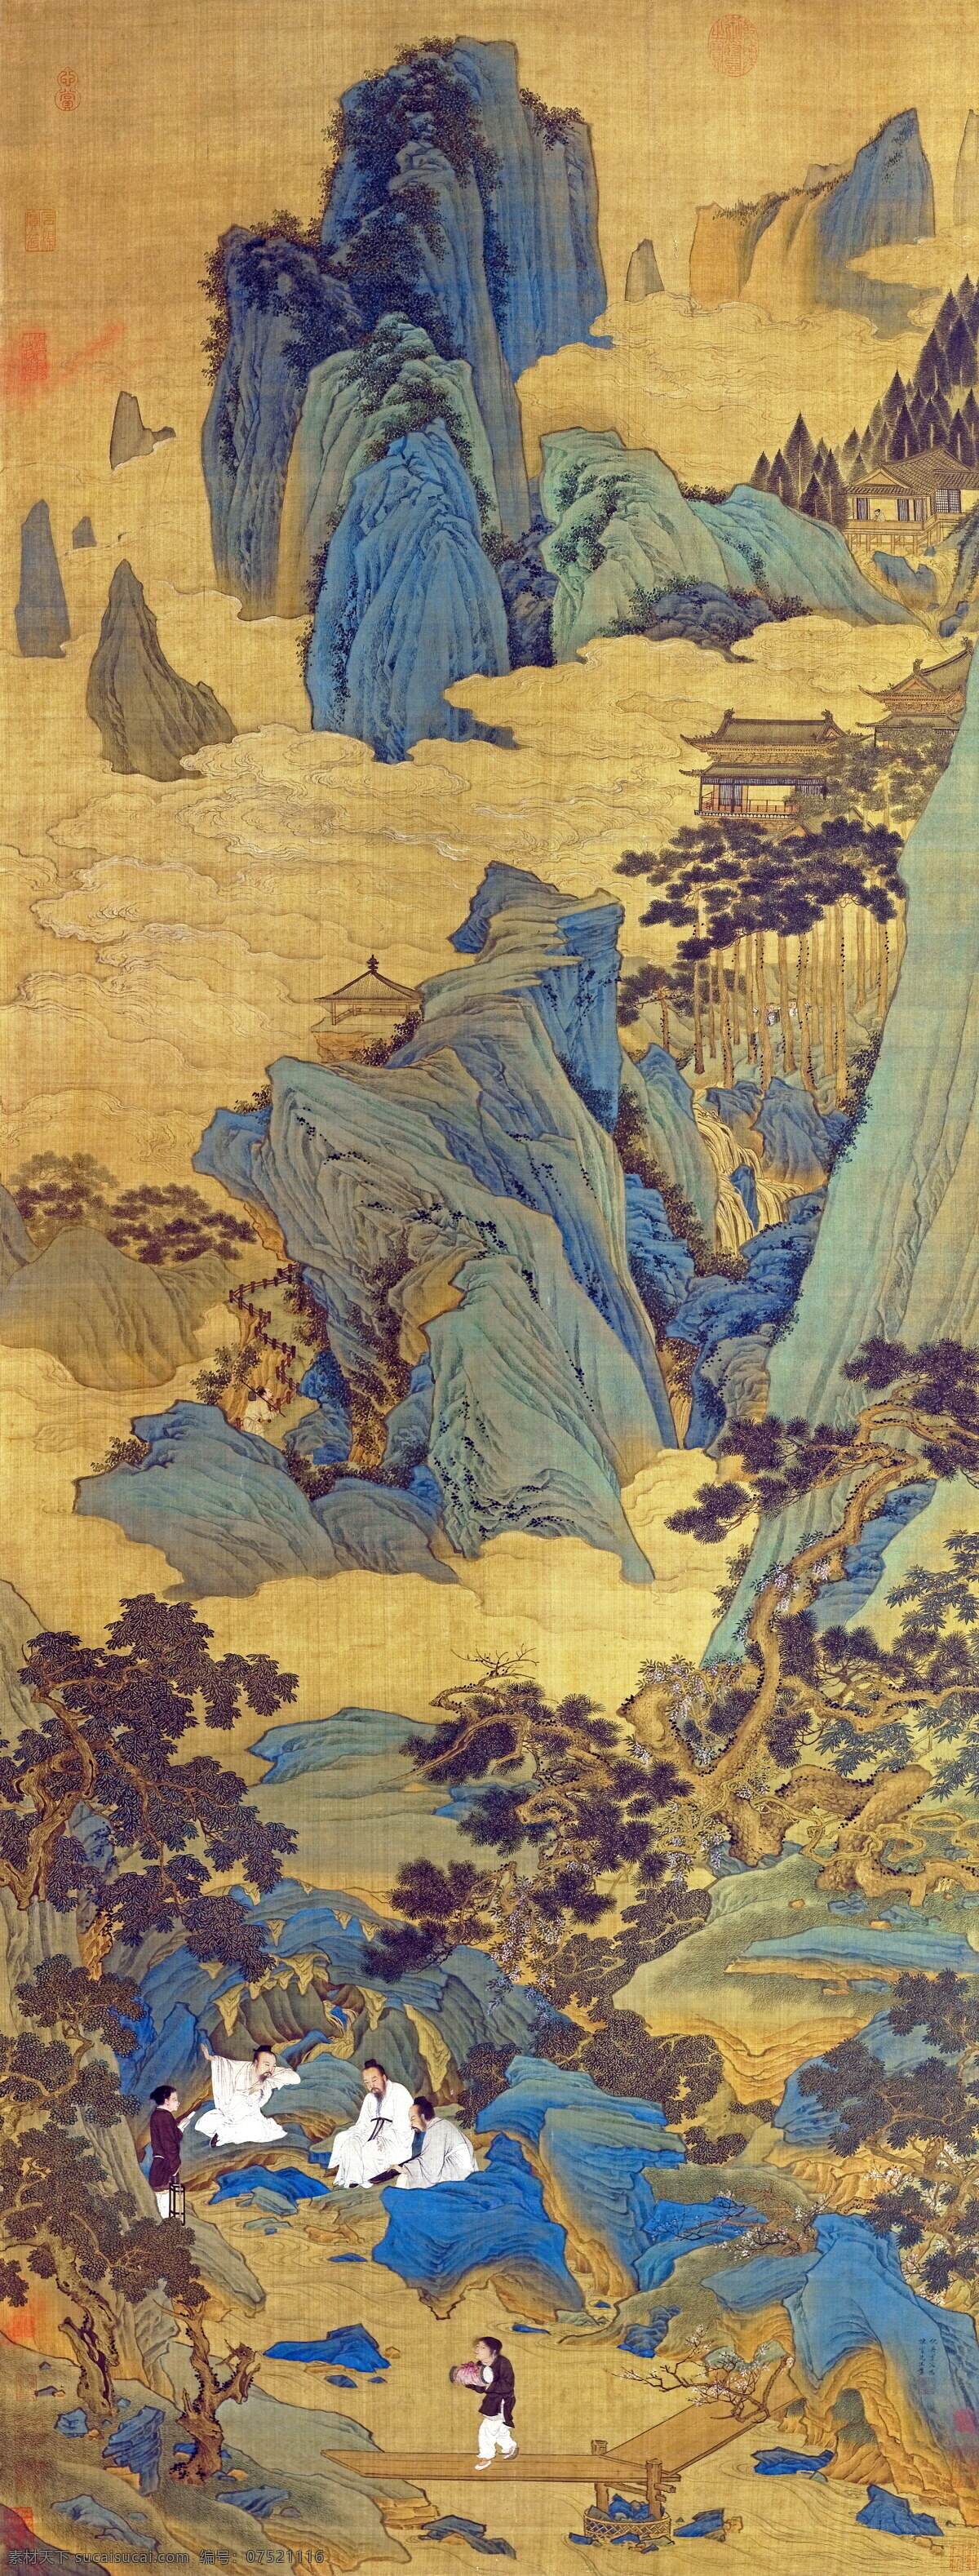 高清国画 国画 绘画 古代 山水 古画 人物画 彩色画 中国风格素材 文化艺术 绘画书法